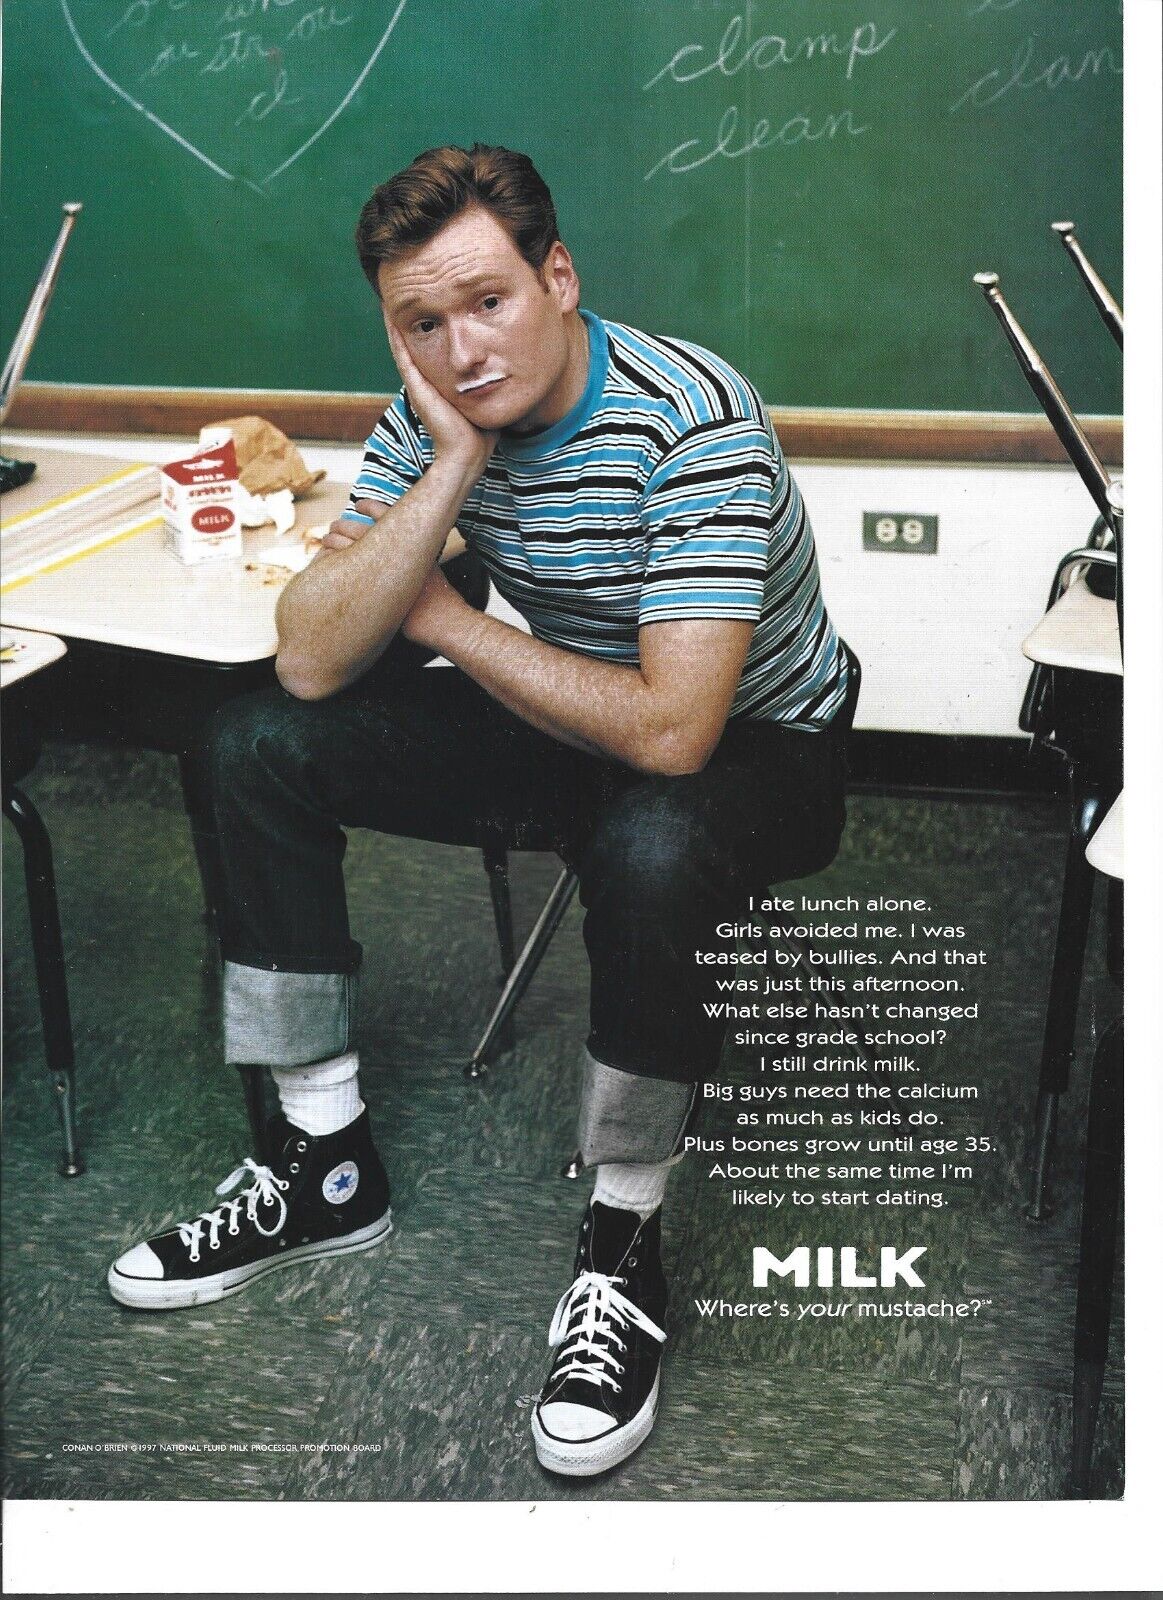 Conan O'brien Got Milk Magazine Ad